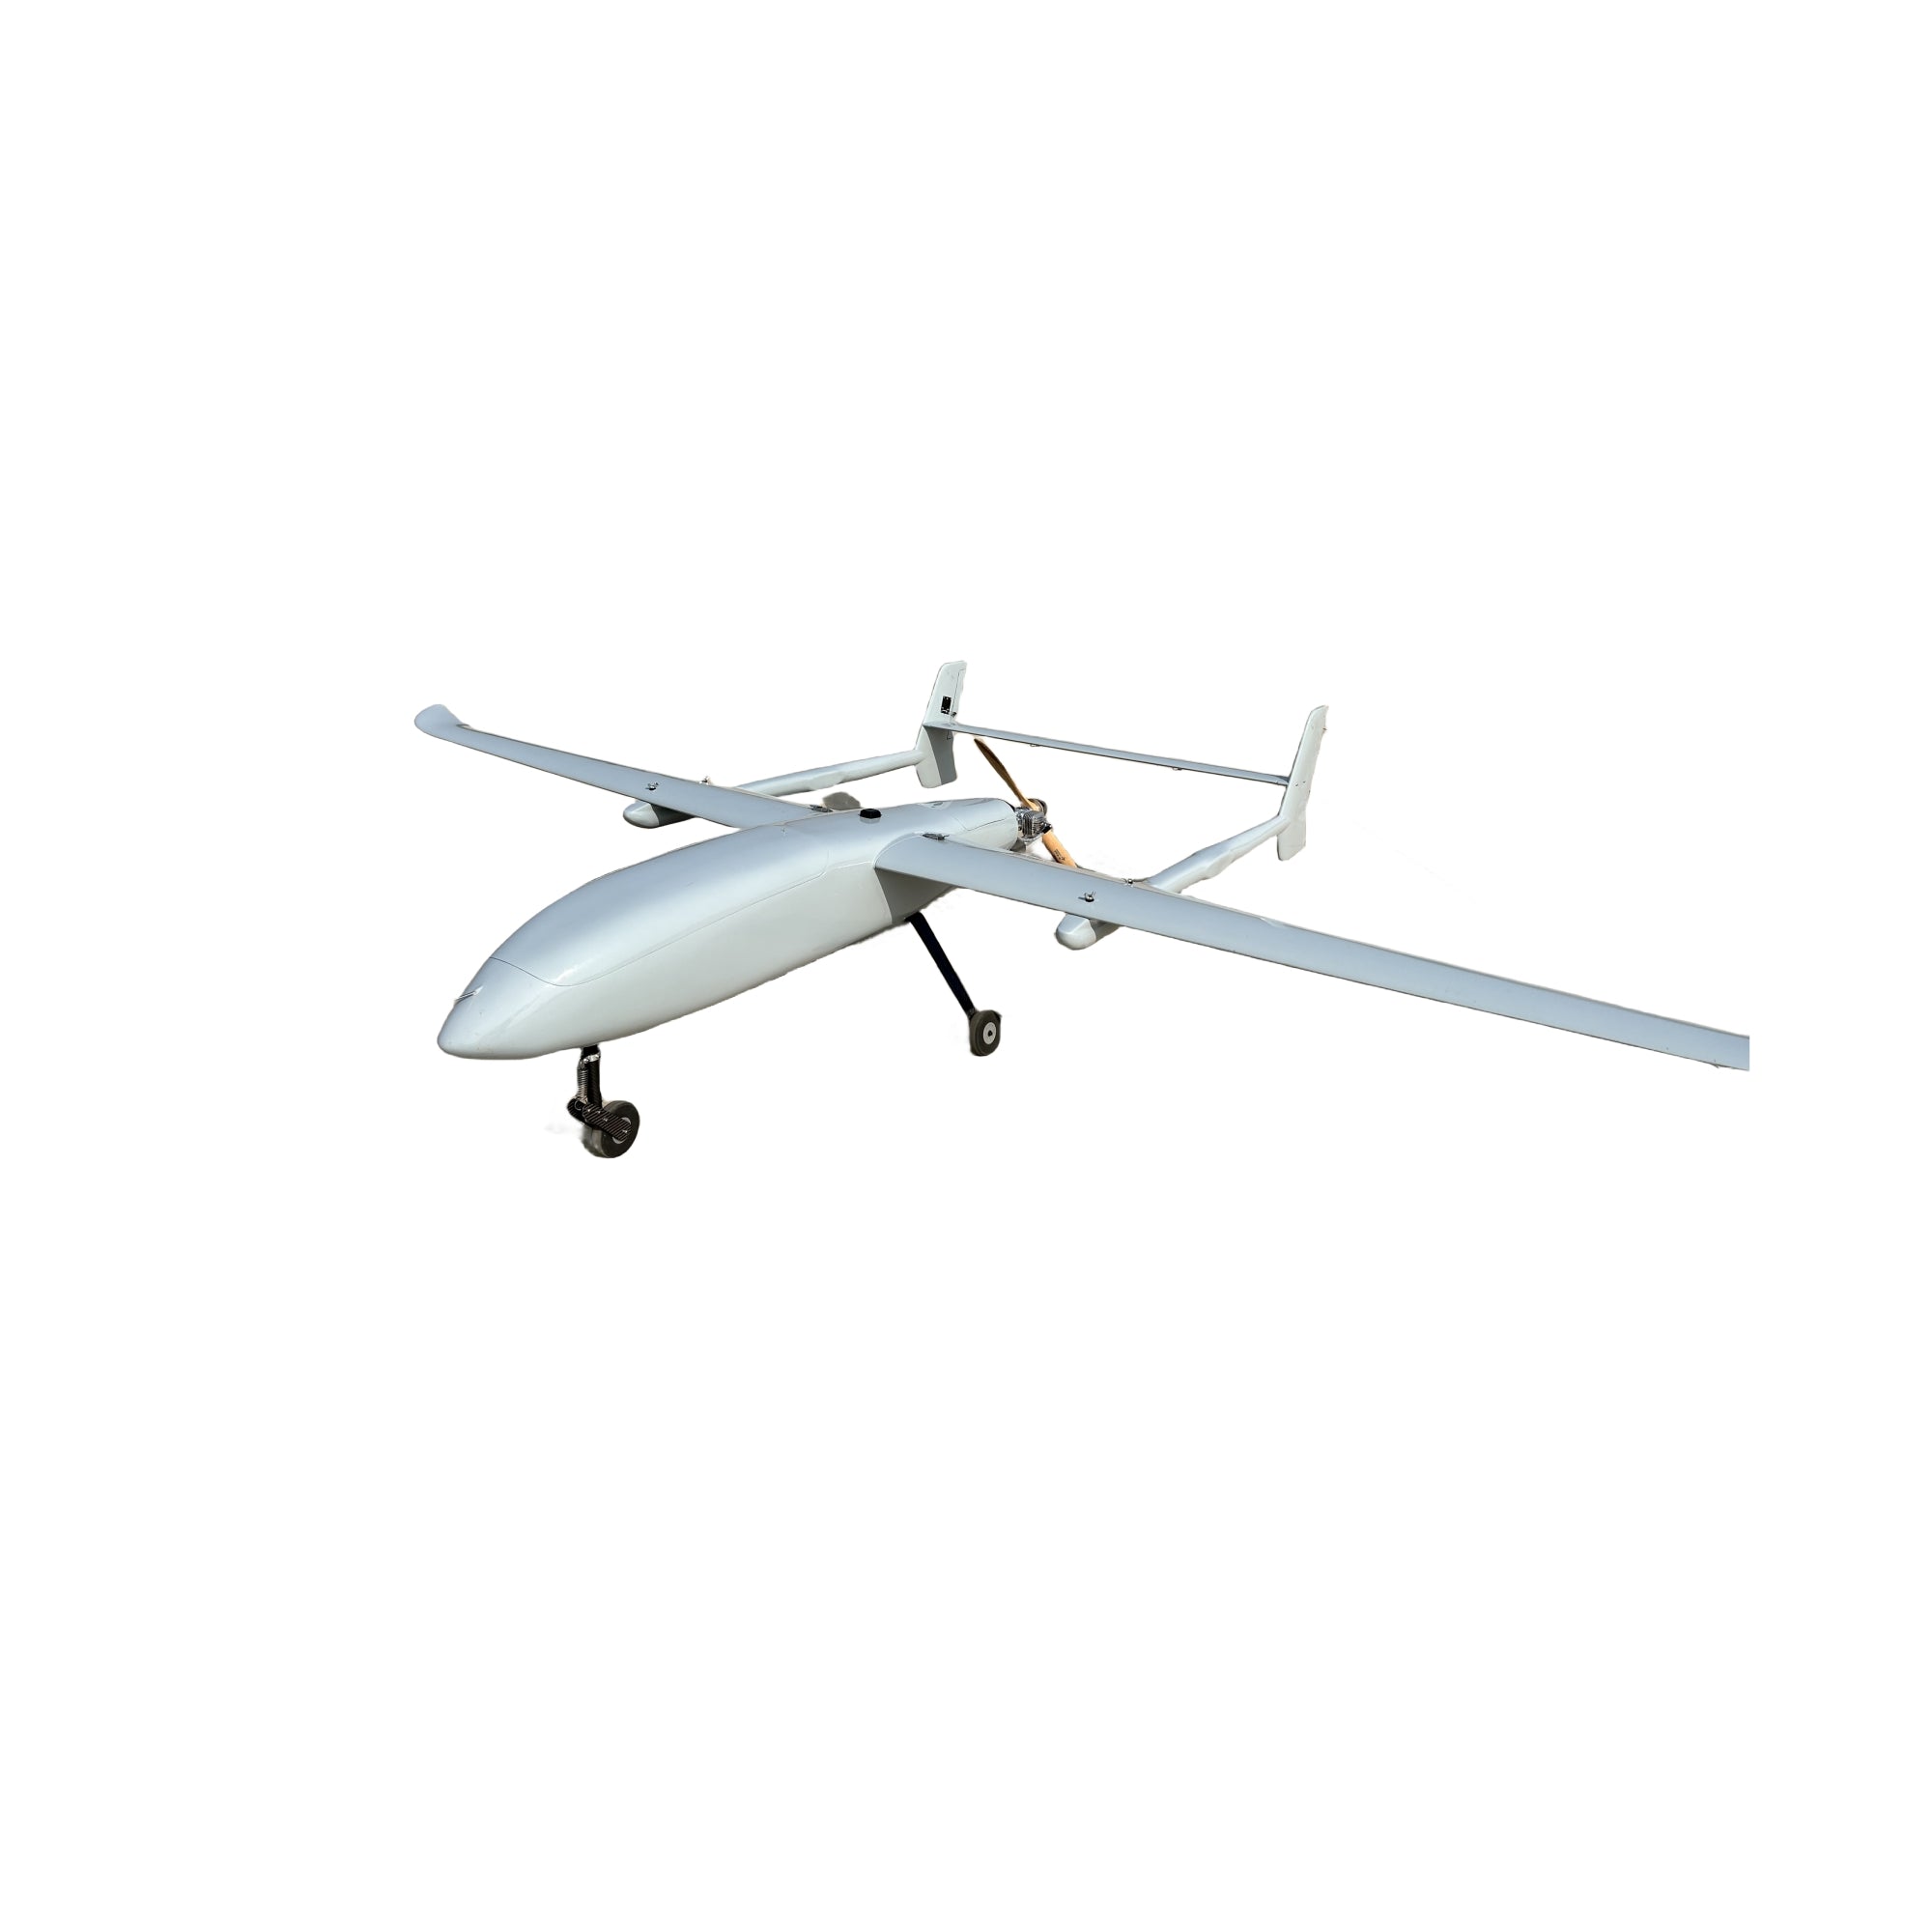 XT-D35 Hybrid UAV-3 Kg Mission Payload for 8 Hours Endurance - Unmanned RC